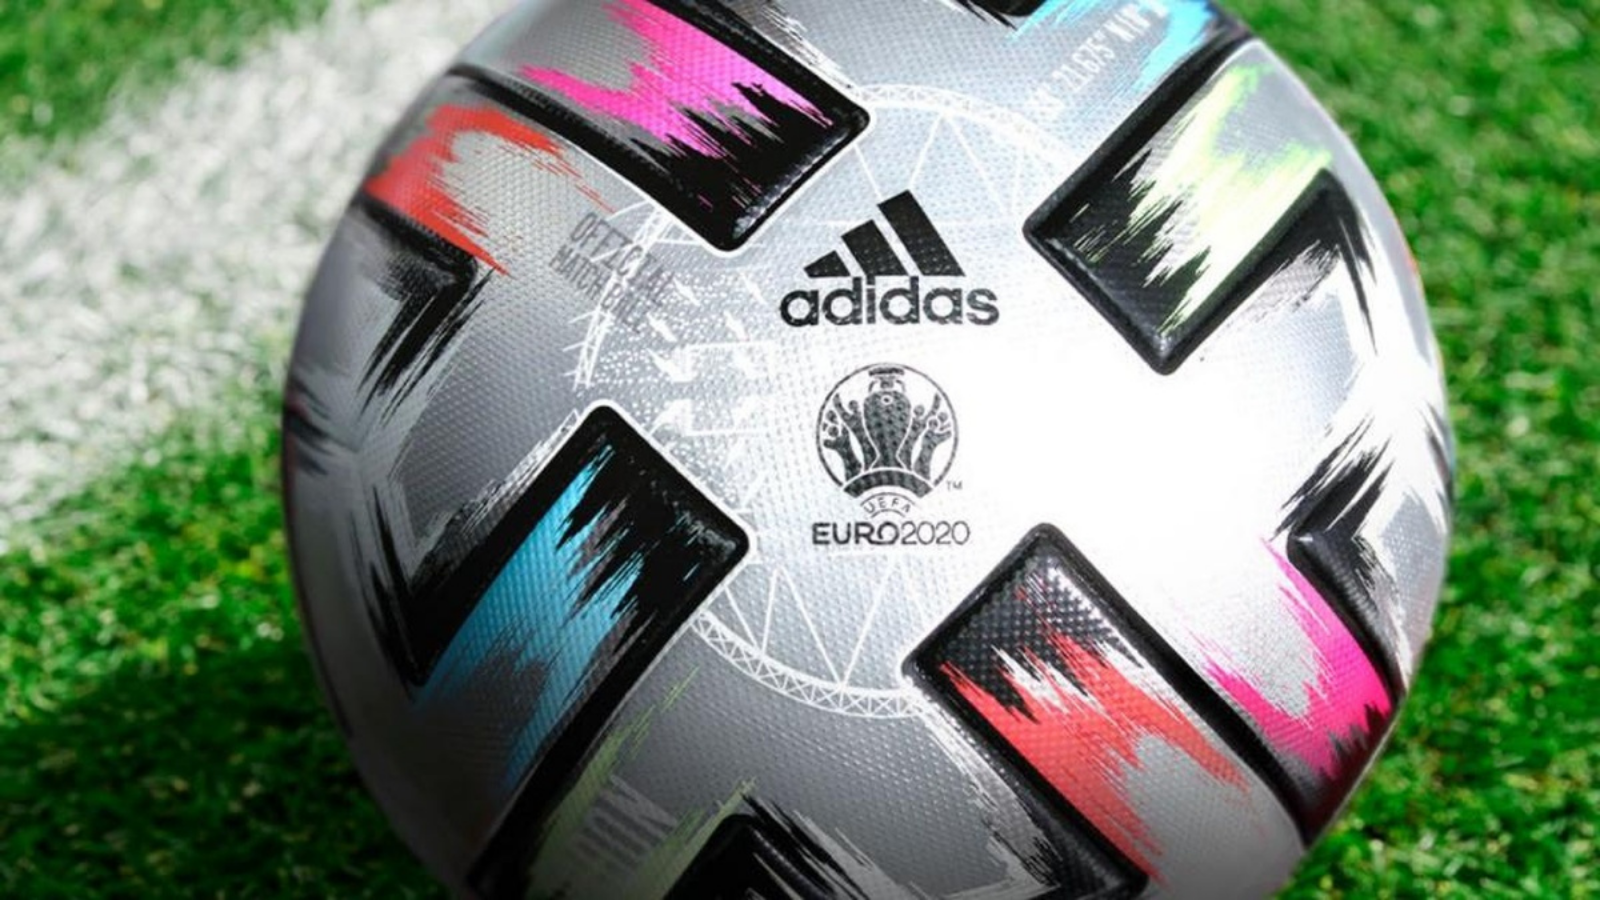 Адидас 2020. Мяч adidas Euro 2020. Мяч adidas Euro 2020 UEFA. Футбольный мяч адидас евро 2021. Мяч адидас 2021.